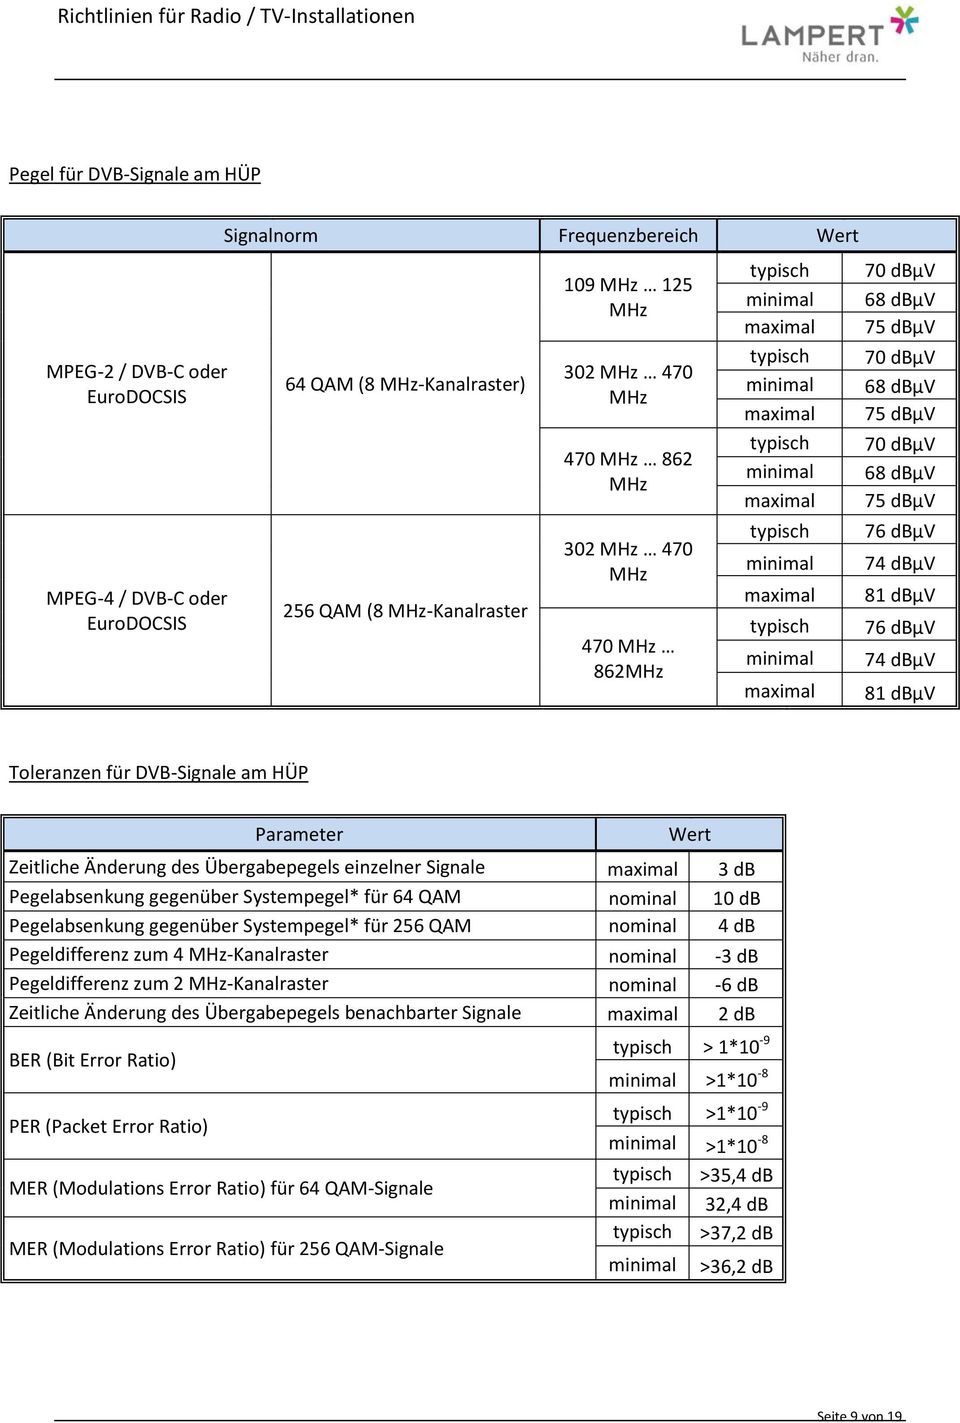 dbµv 74 dbµv 81 dbµv Toleranzen für DVB-Signale am HÜP Parameter Wert Zeitliche Änderung des Übergabepegels einzelner Signale maximal 3 db Pegelabsenkung gegenüber Systempegel* für 64 QAM nominal 10